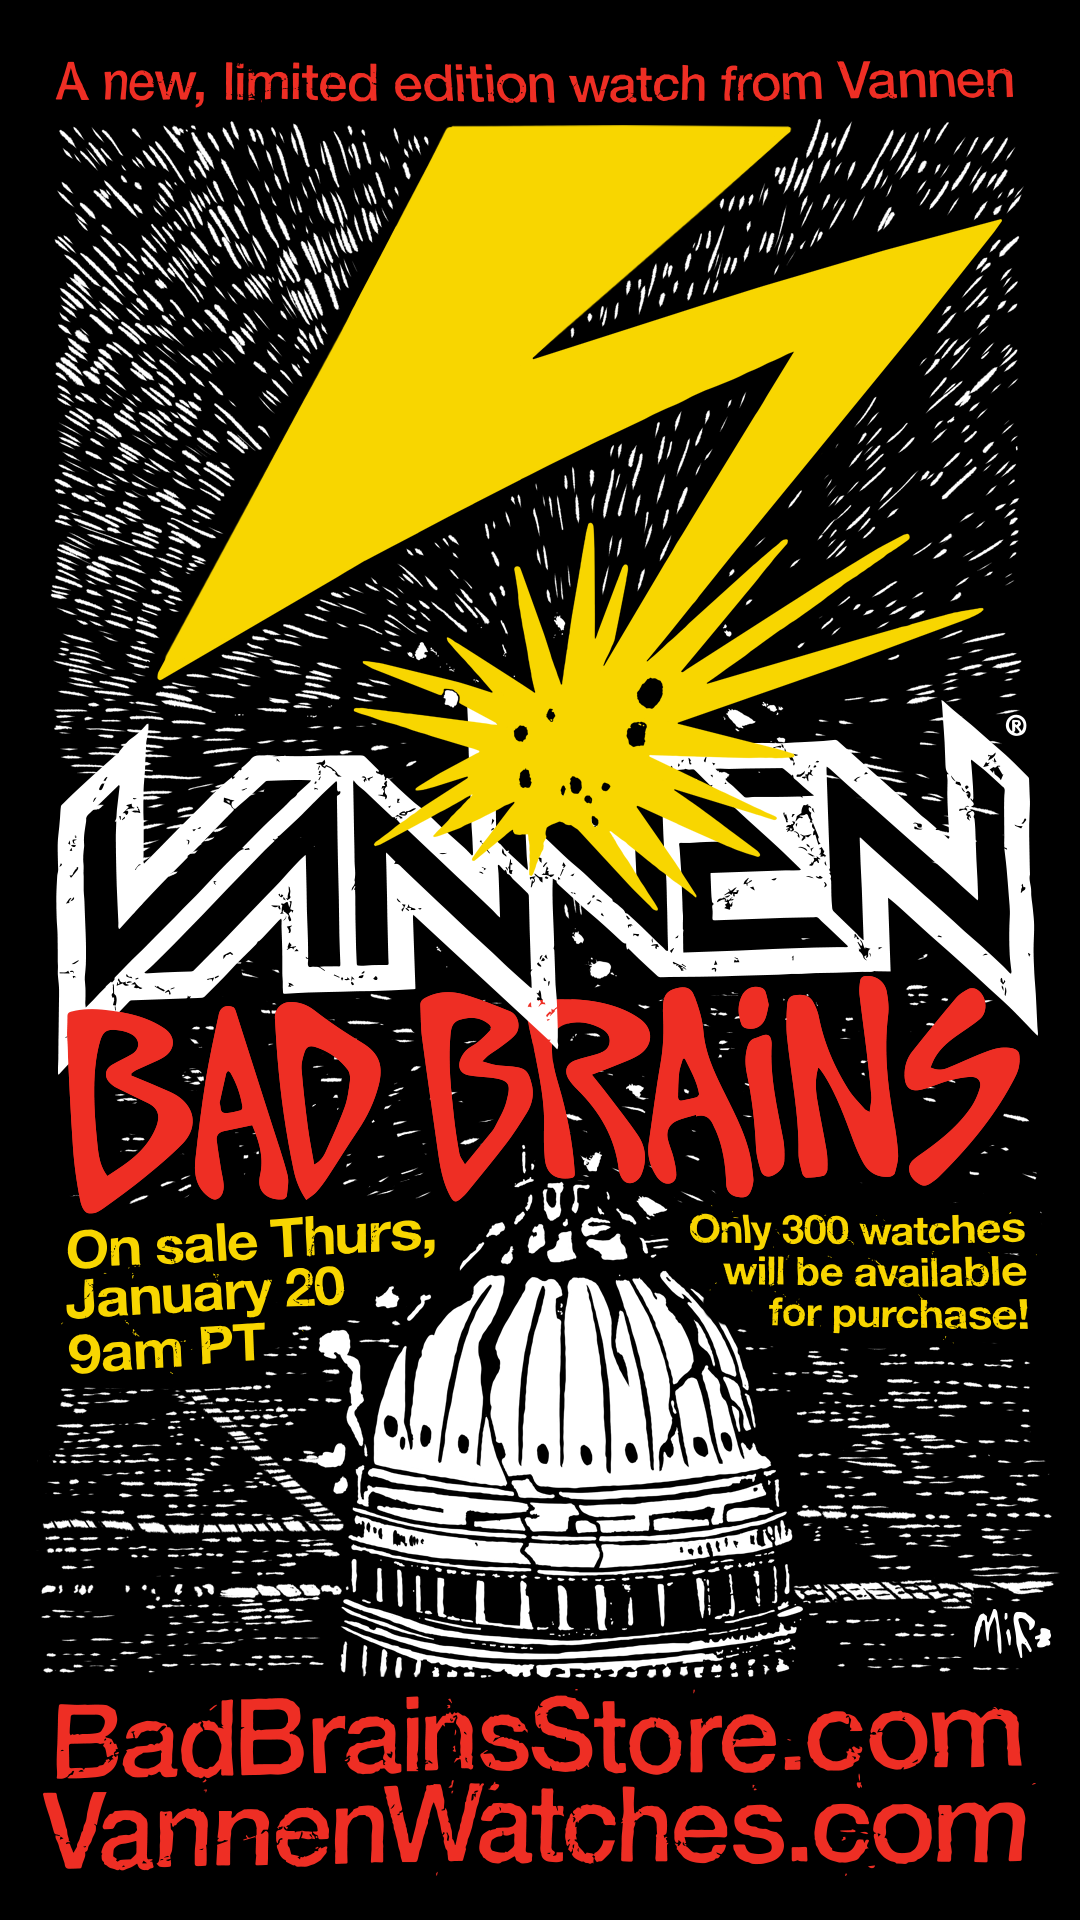 Bad Brains x Vannen Watch announcement